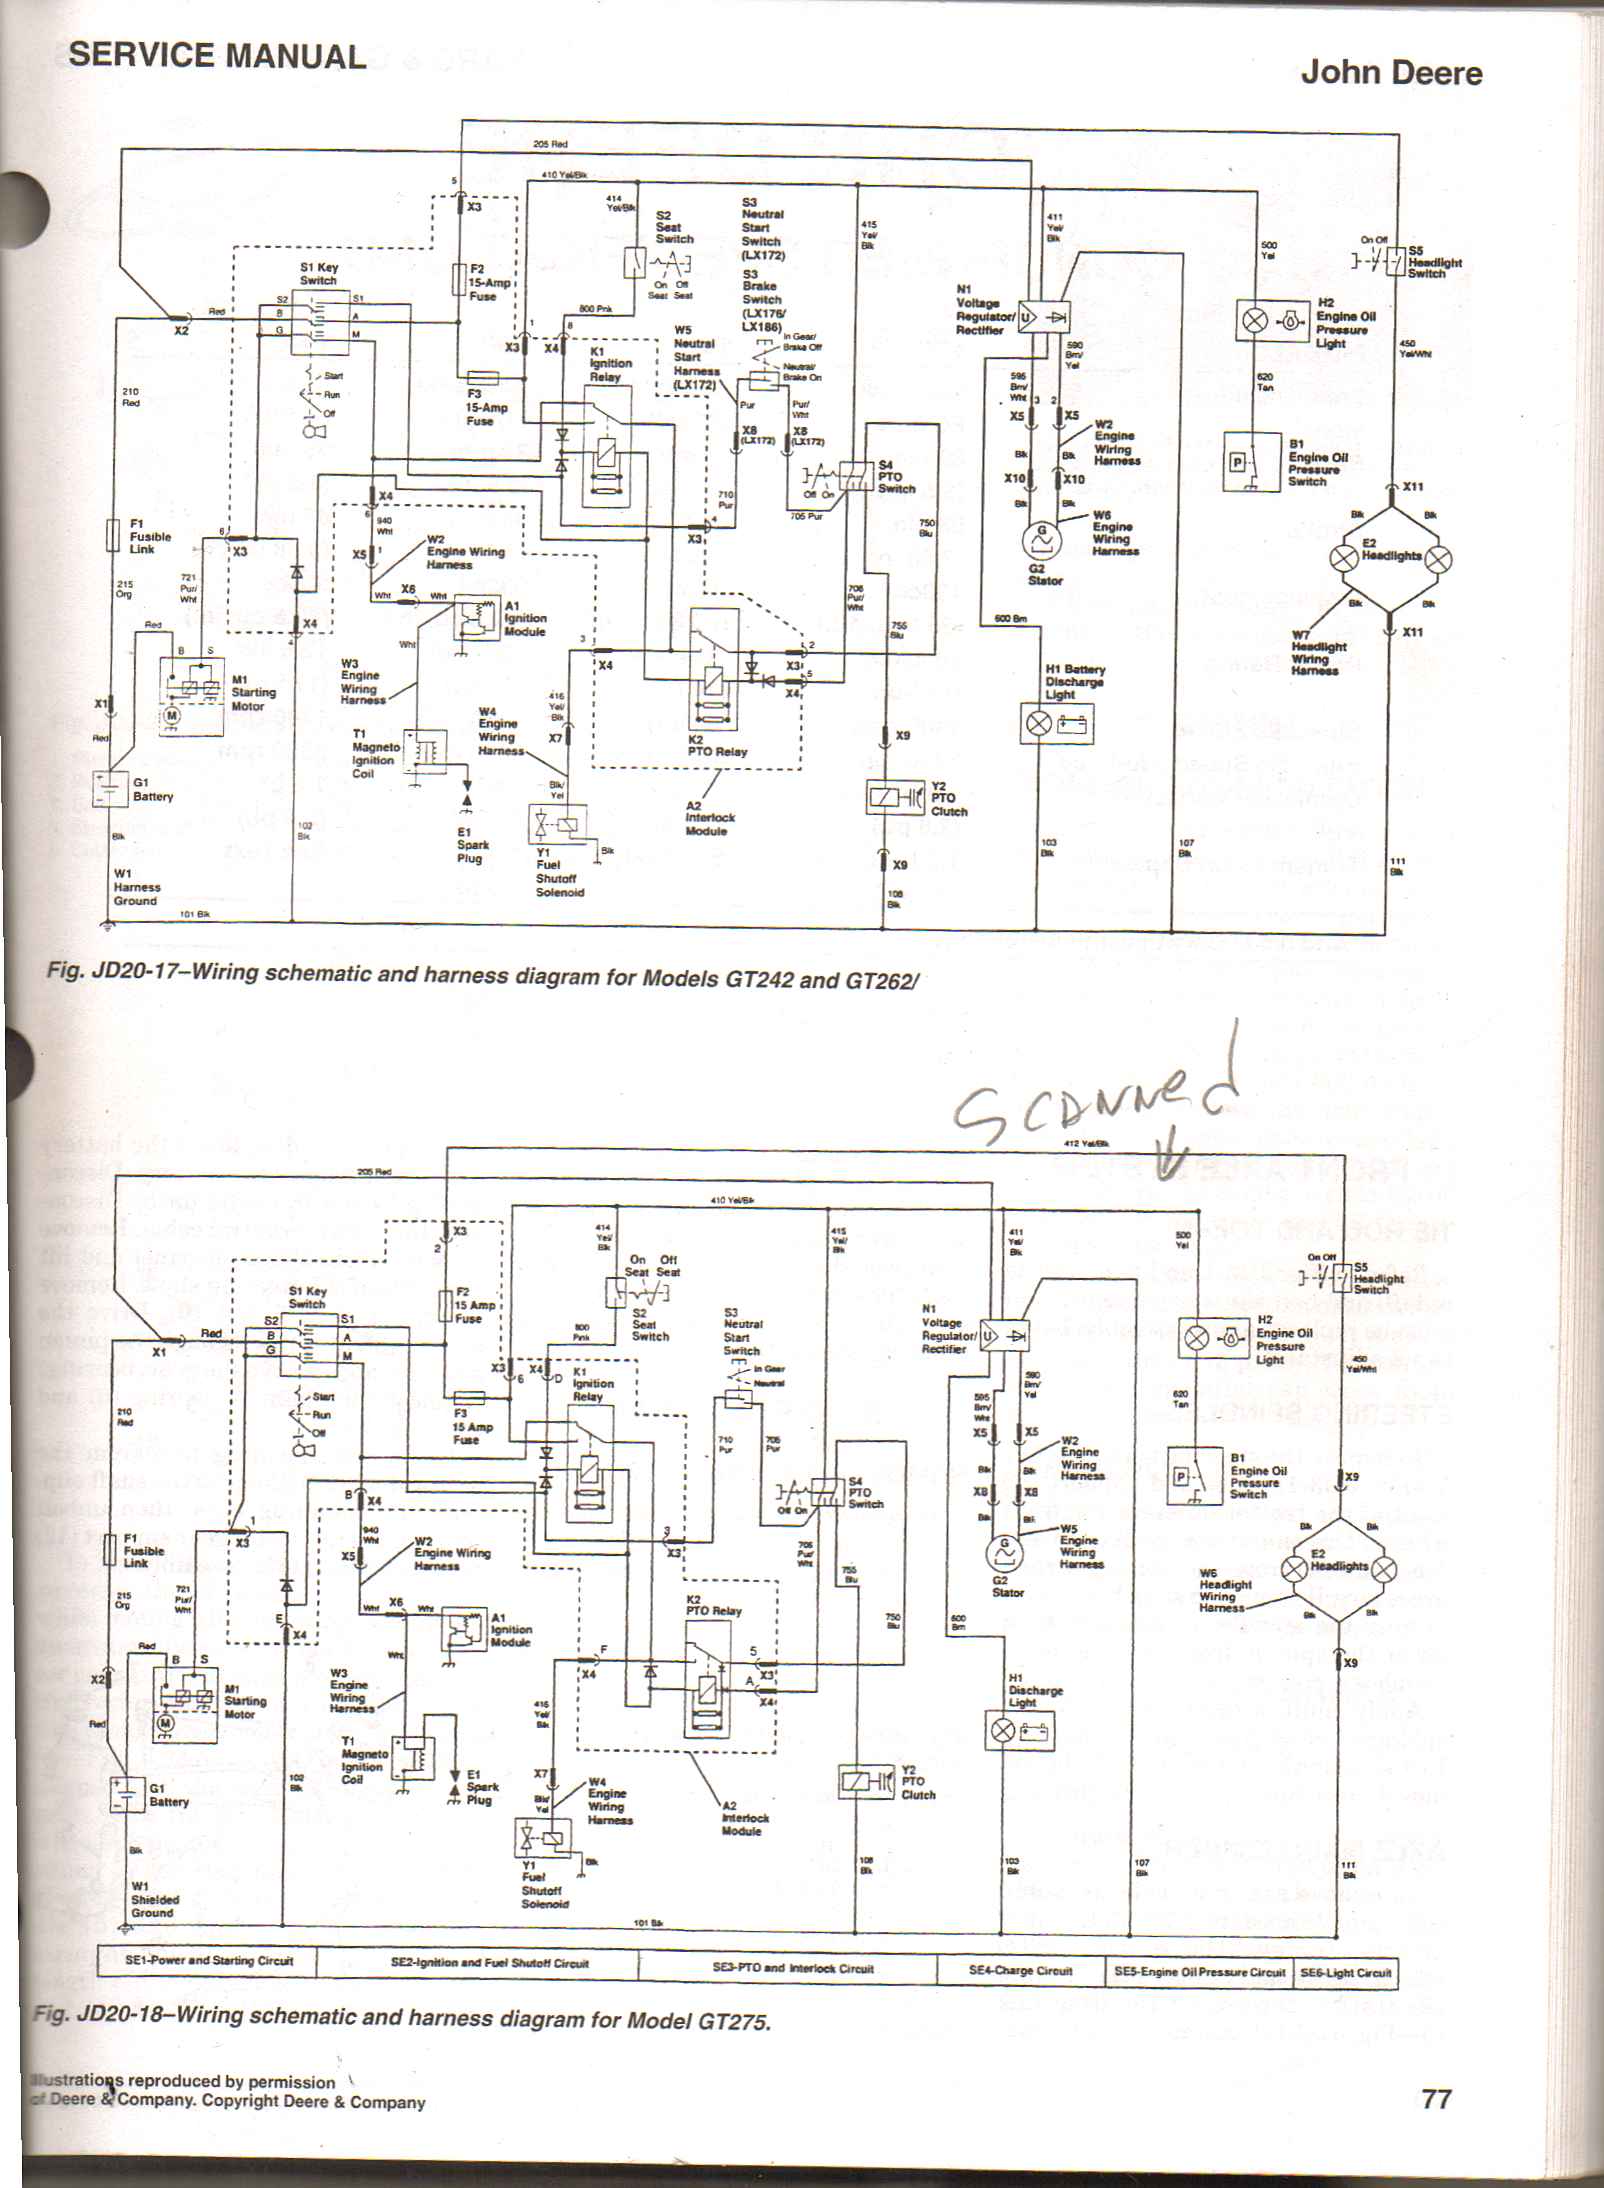 john deere gt262 wiring diagram